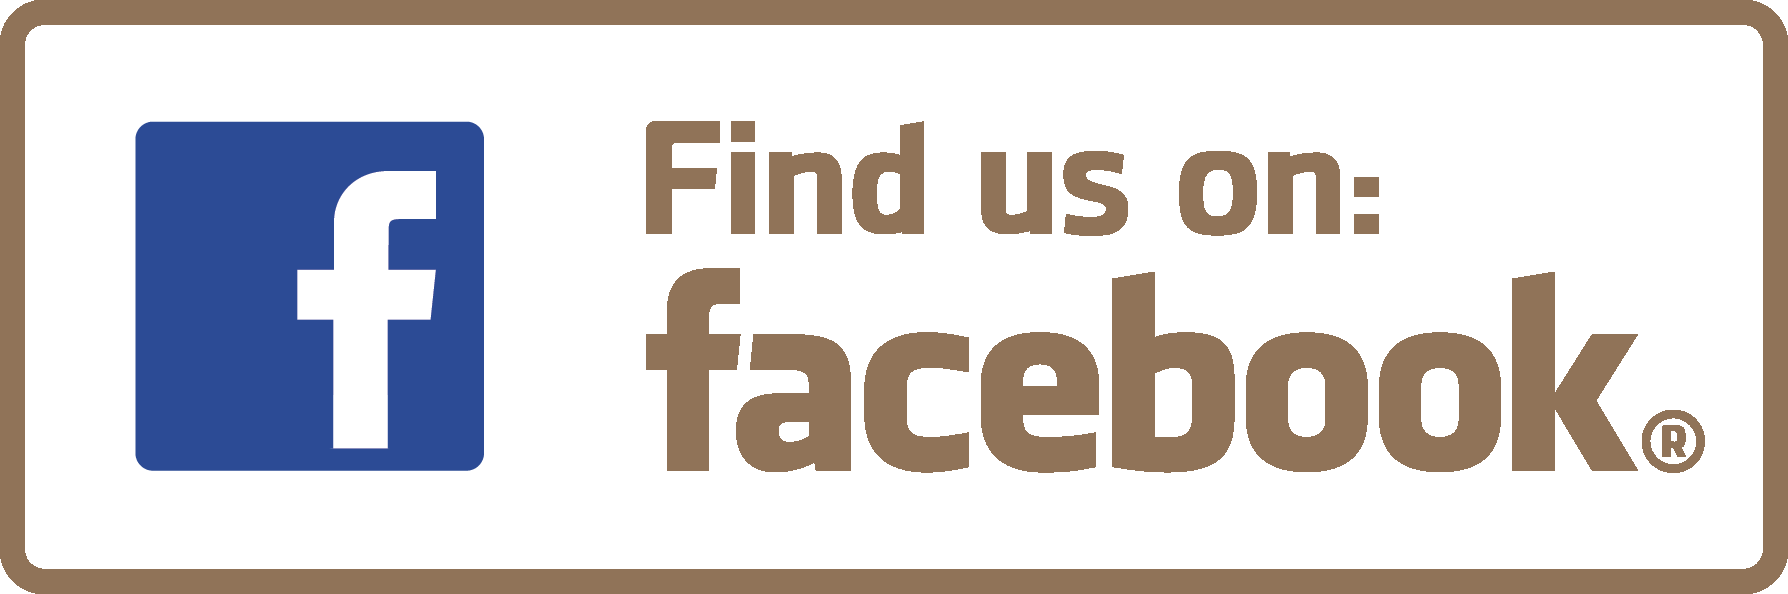 Find-us-on-Facebook_gold